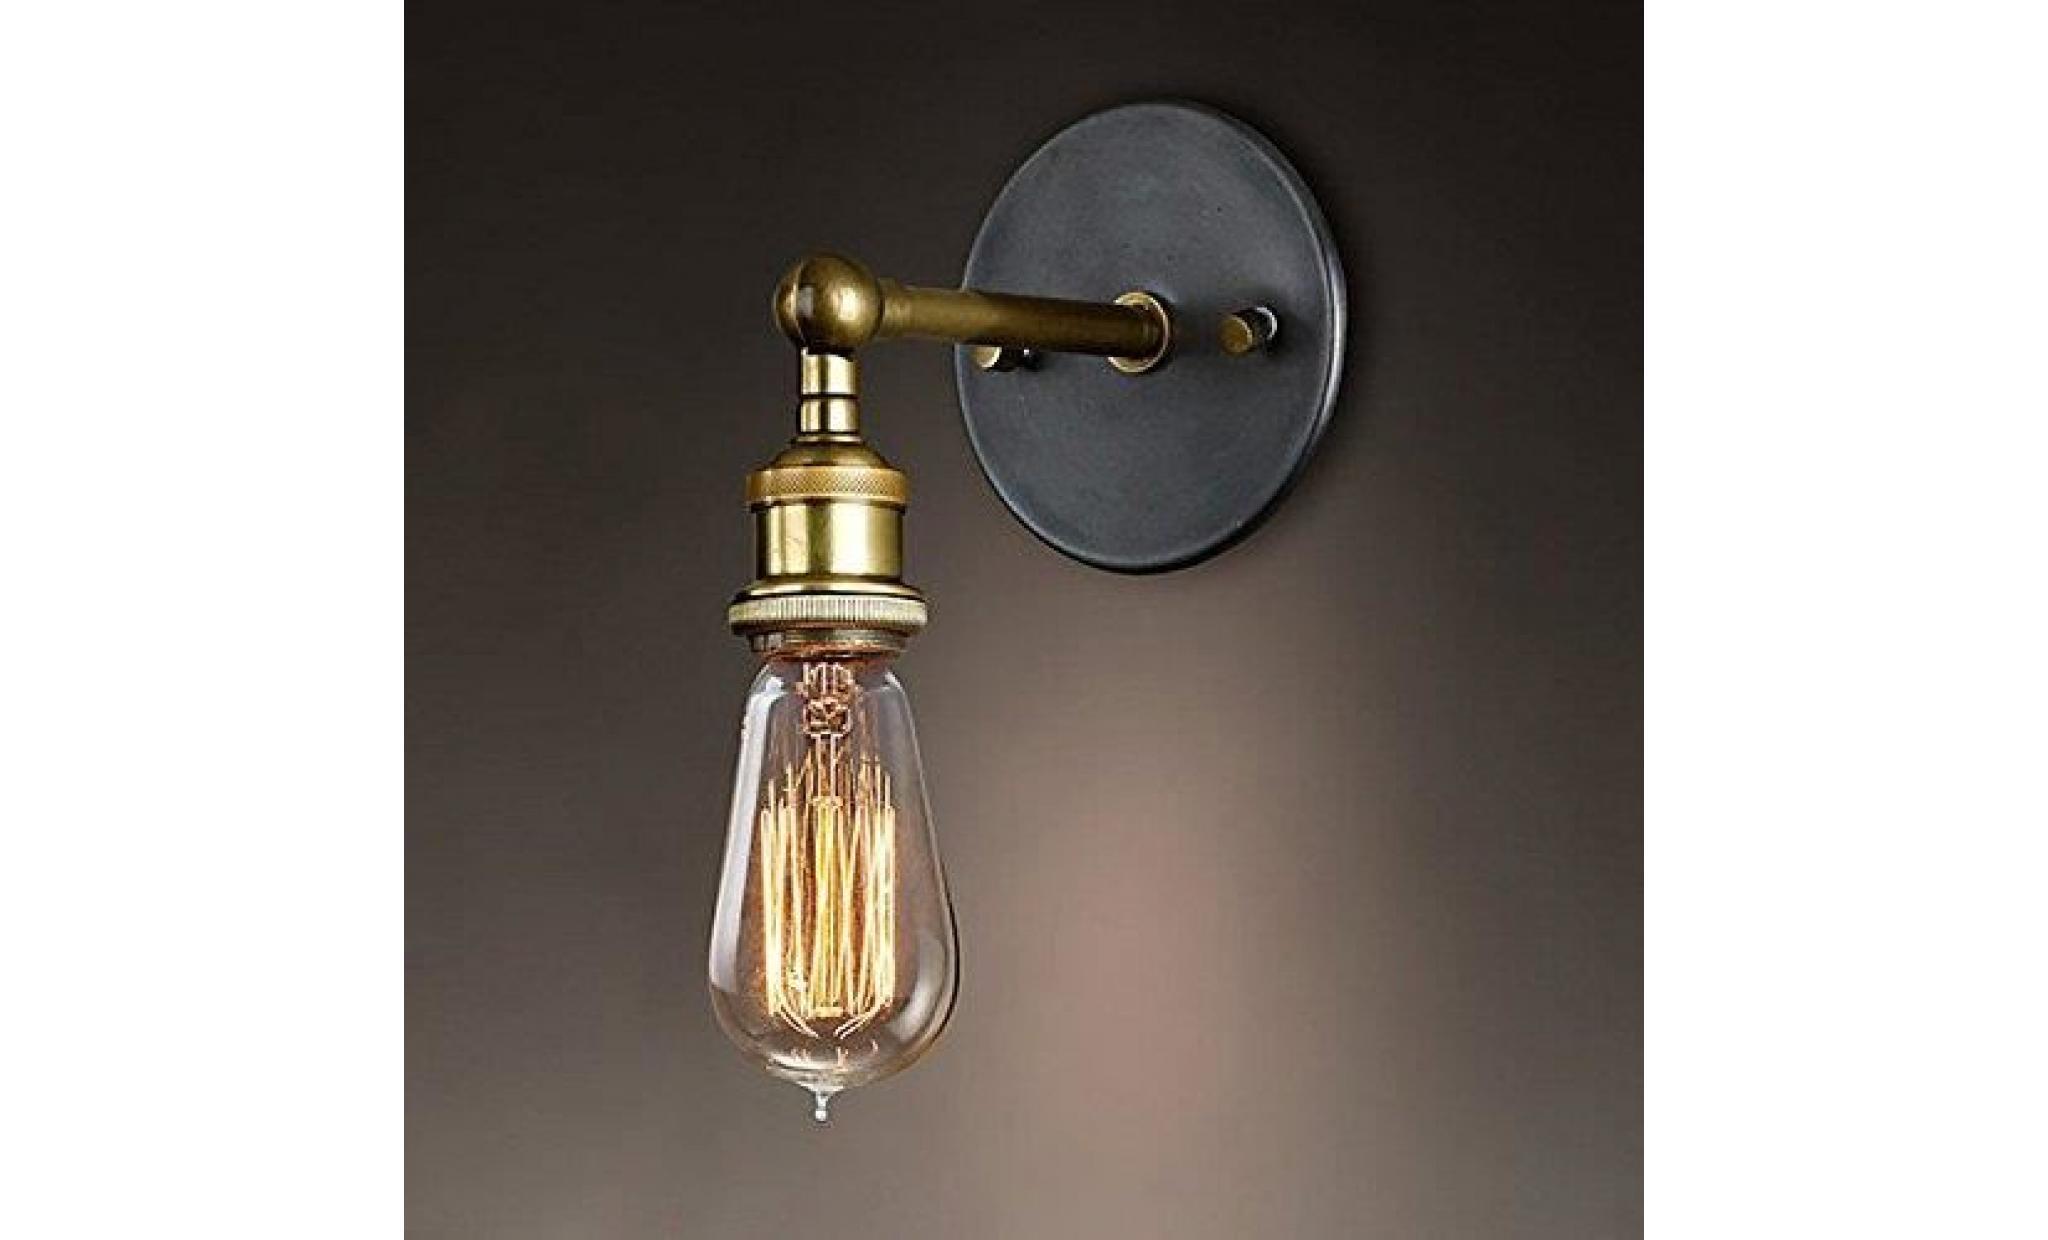 splink rétro luminaire applique murale style industriel réglable finition de laiton Éclairage vintage edison lampe douille e27 pour